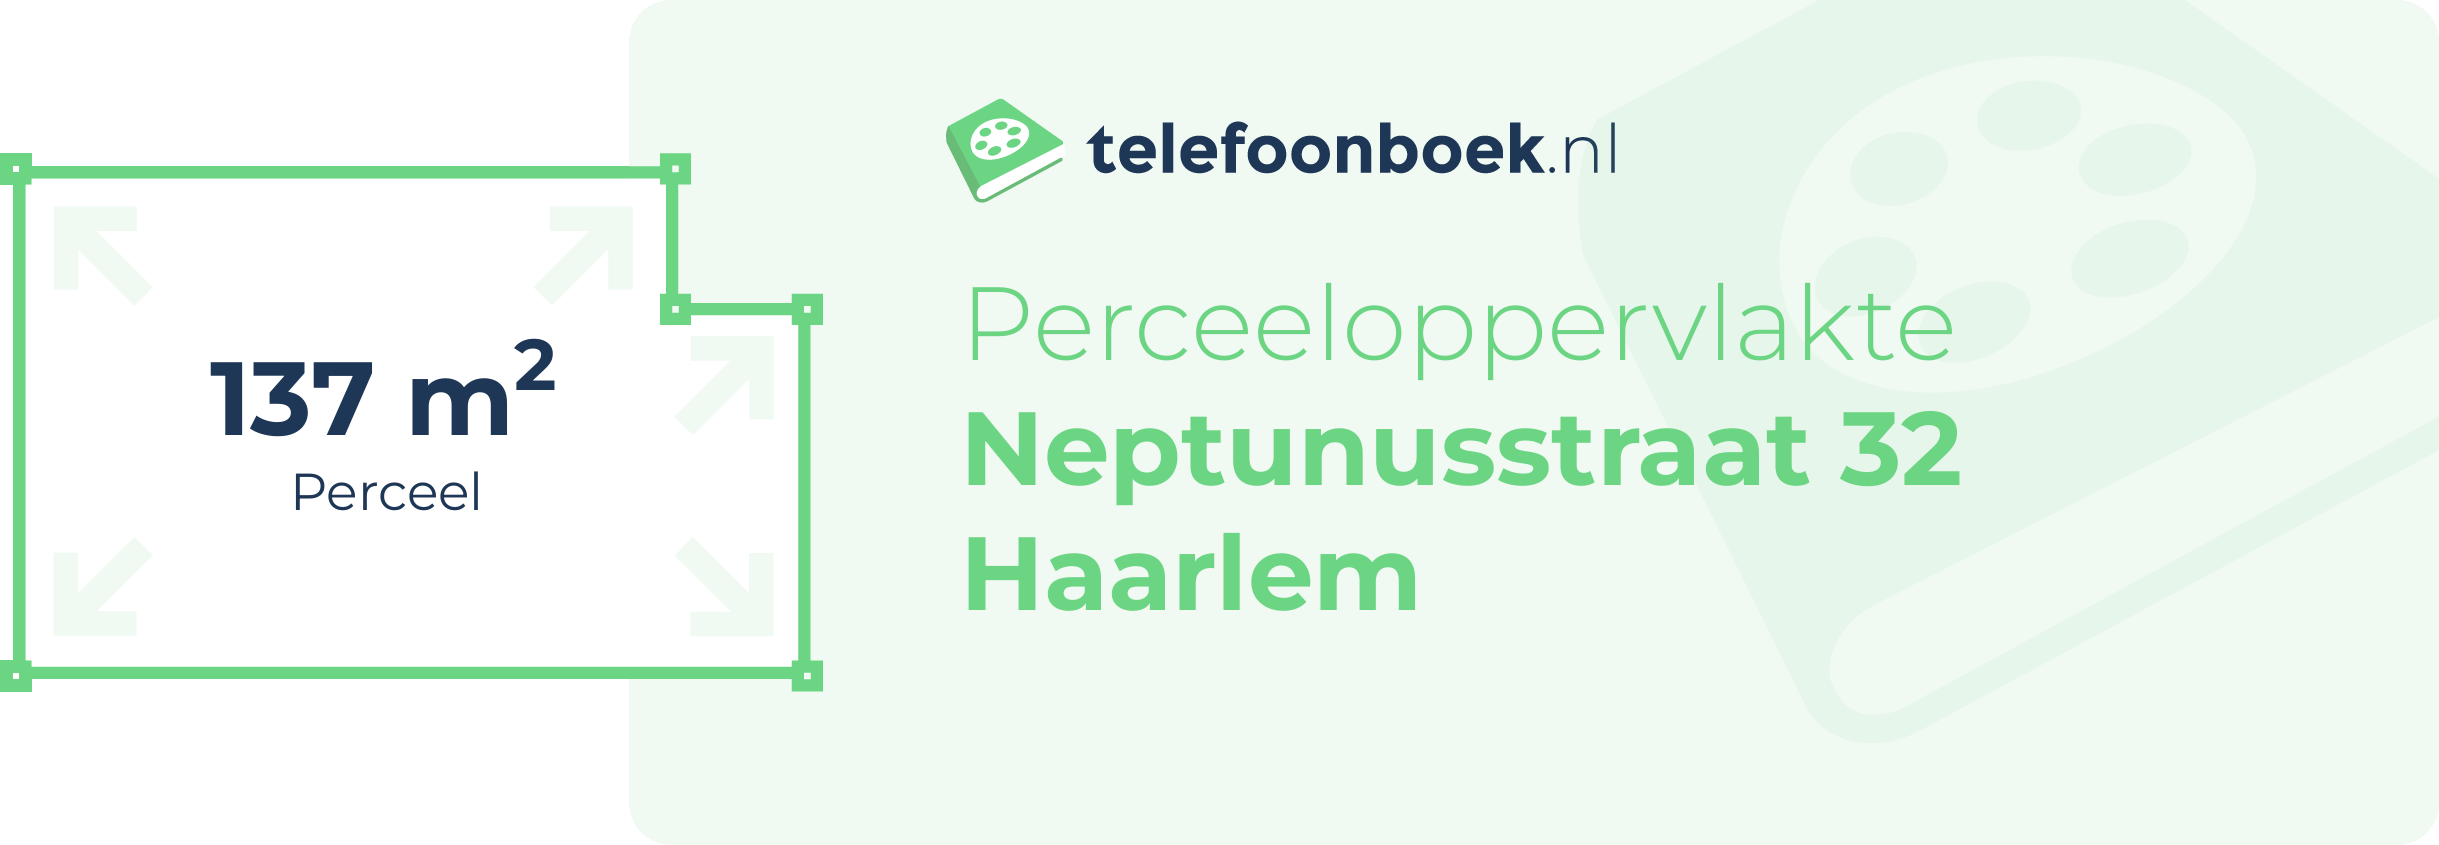 Perceeloppervlakte Neptunusstraat 32 Haarlem